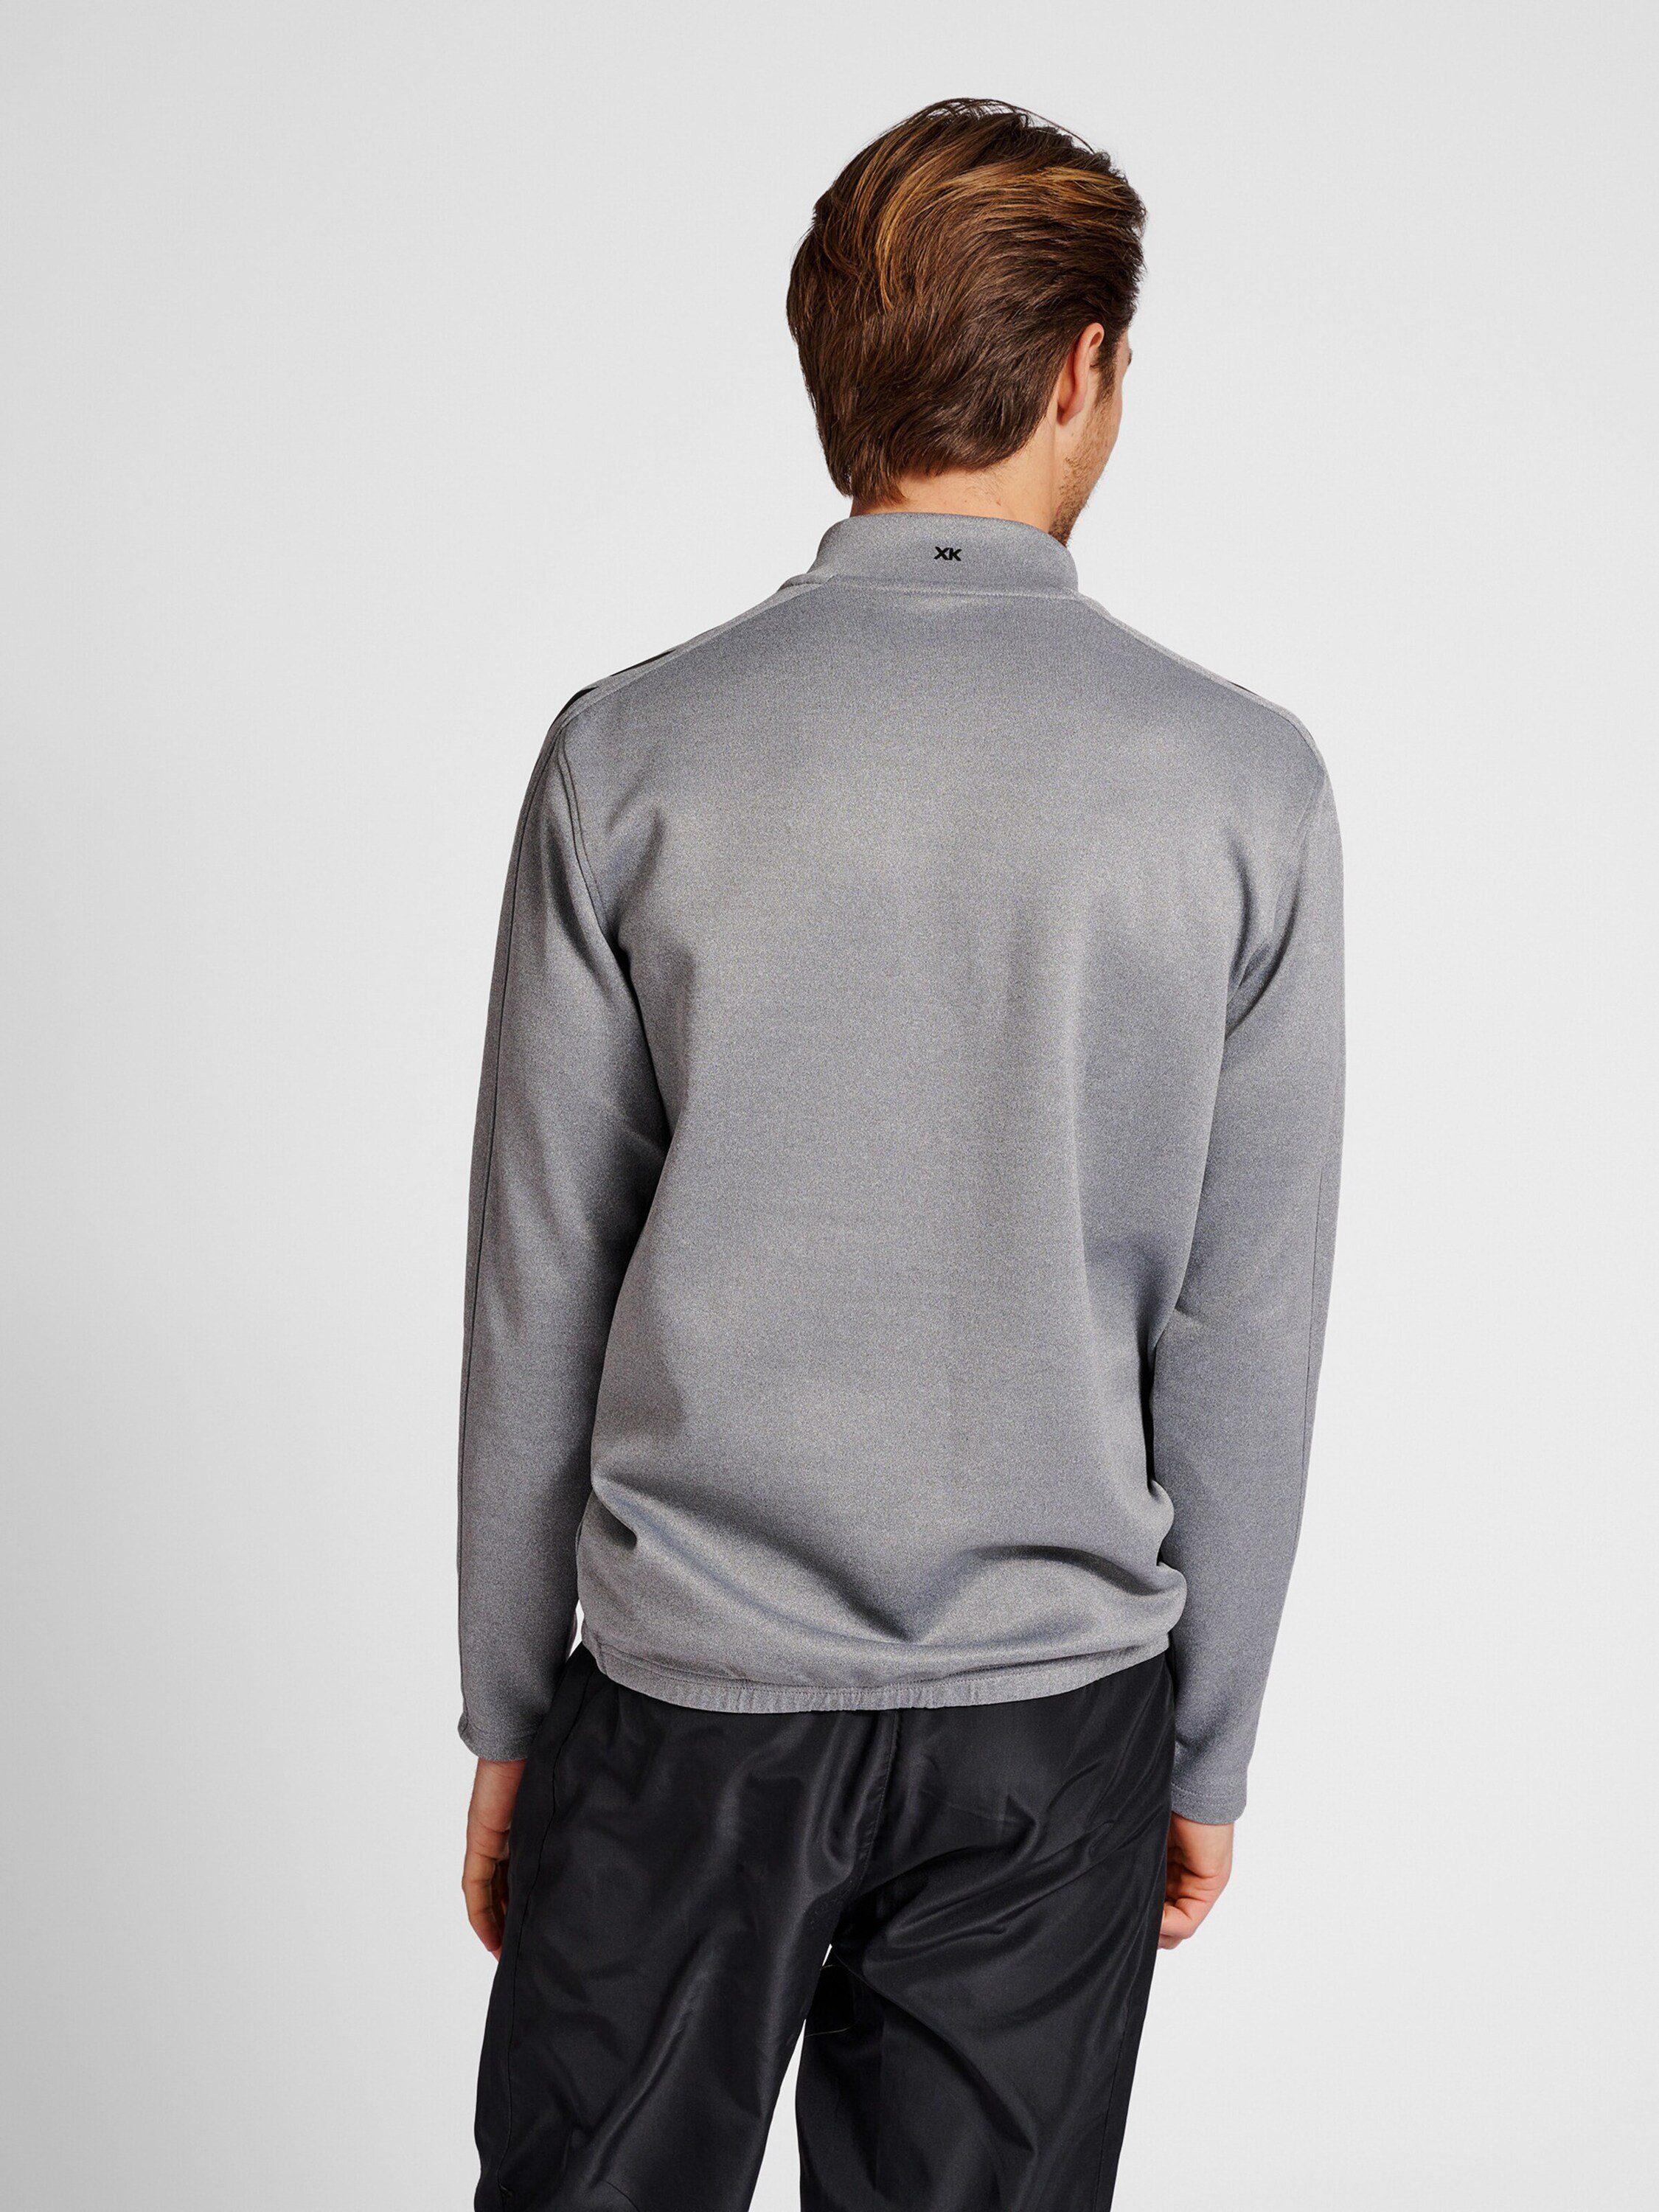 hummel Sweatshirt (1-tlg) Plain/ohne Details grau